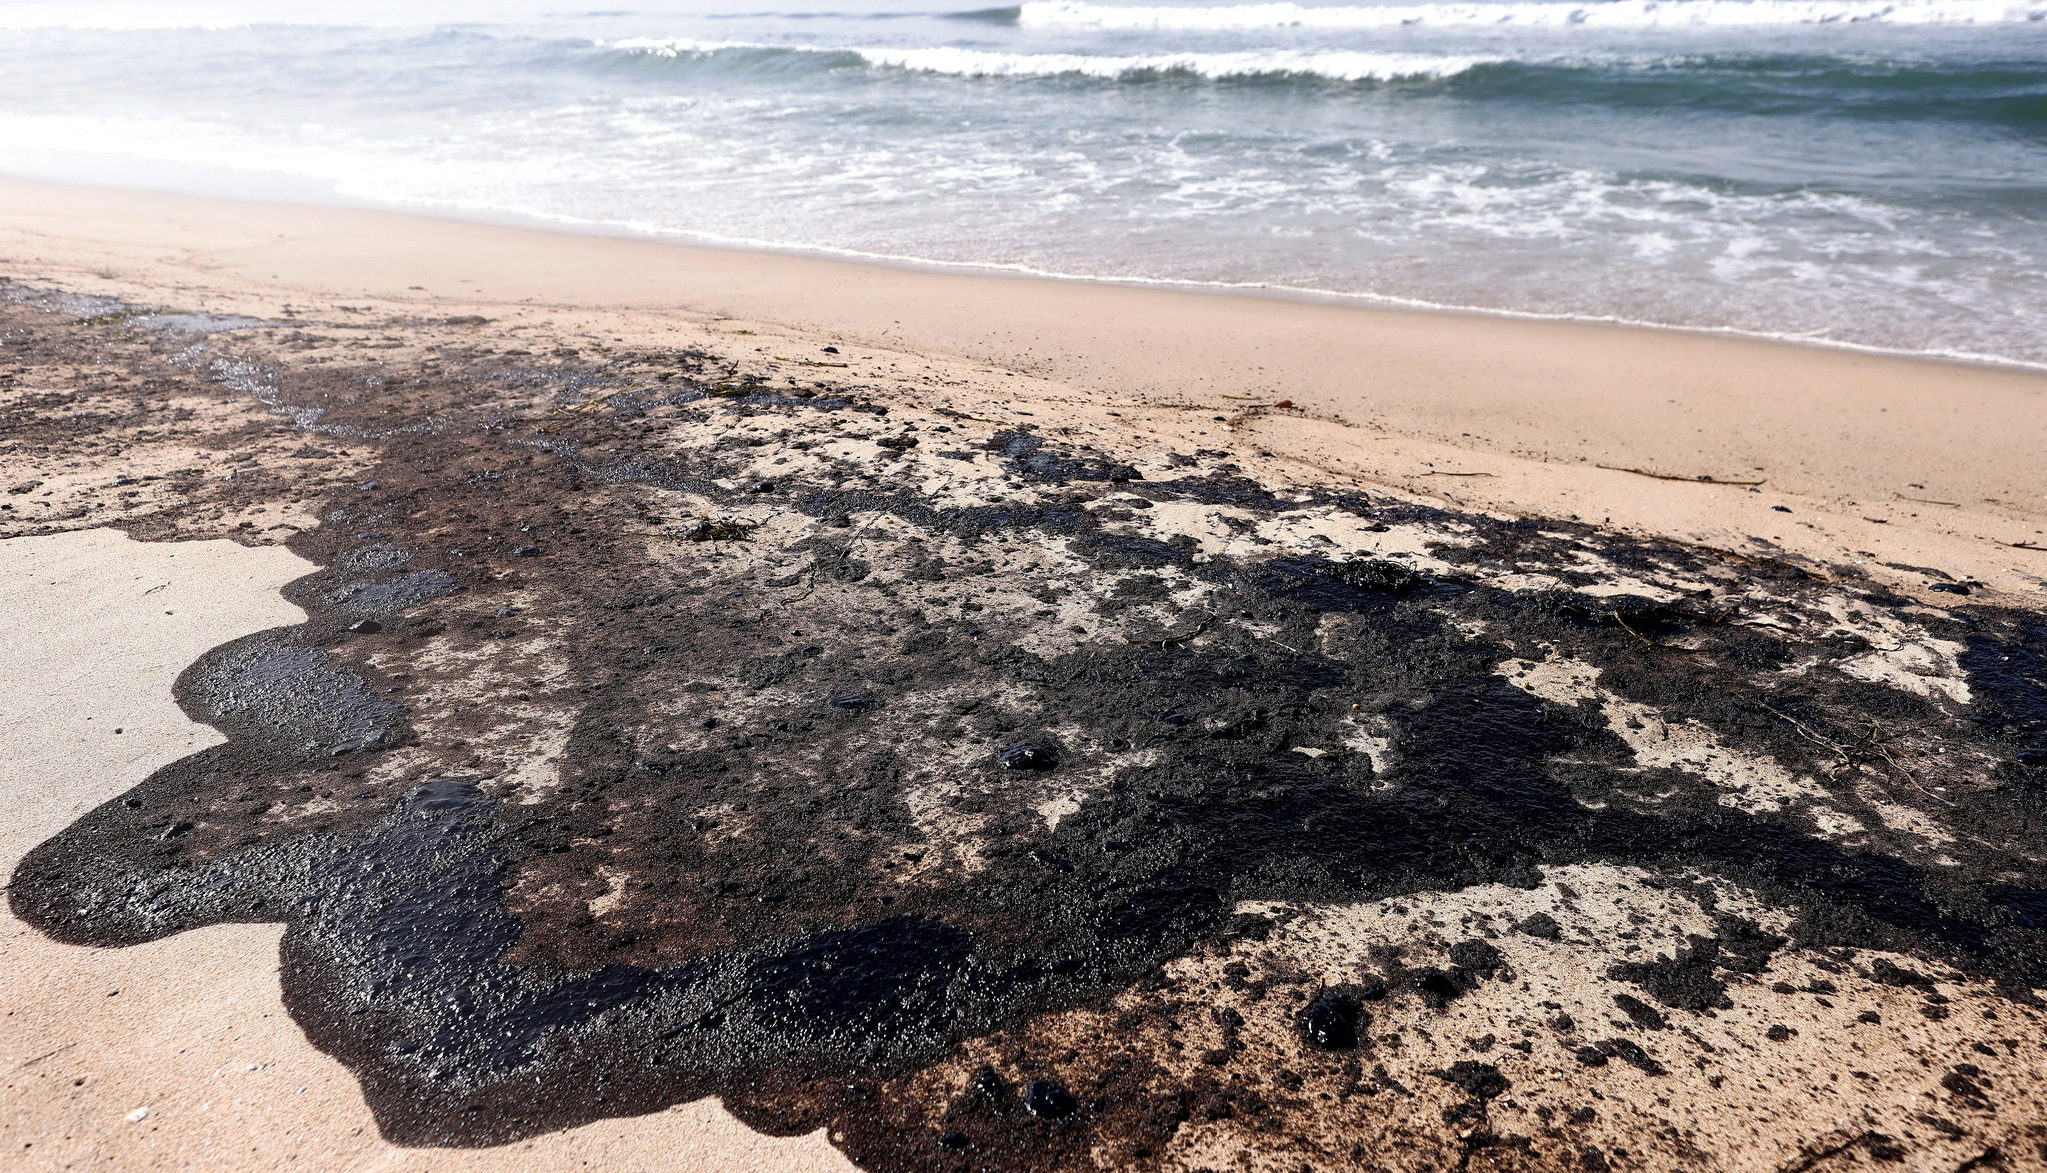 [이 시각] 캘리포니아 해상 대규모 기름 유출 사고, 환경 재앙 우려